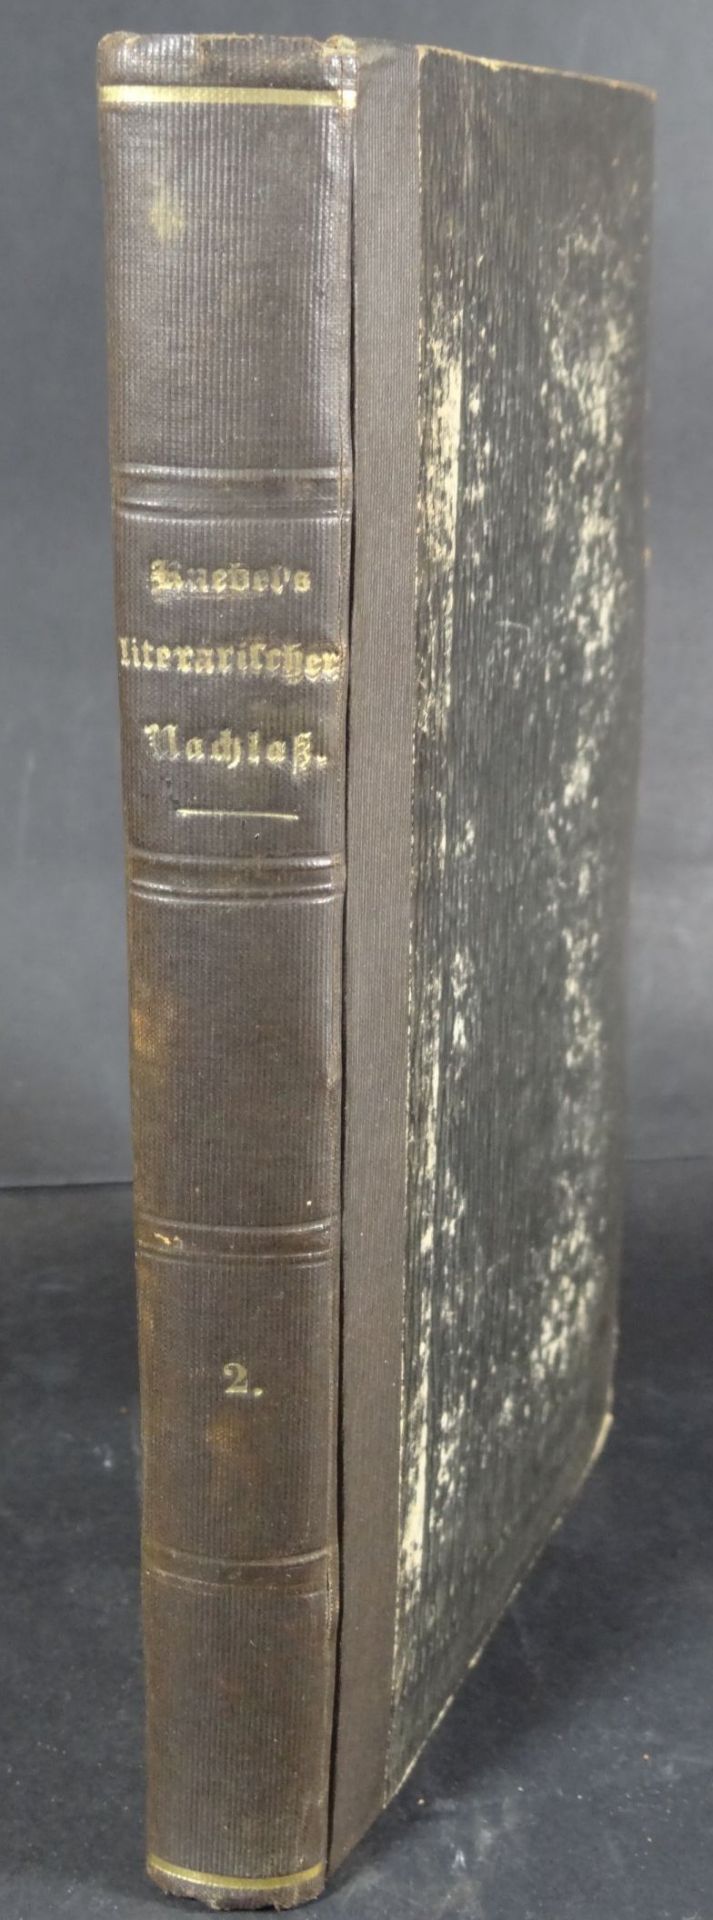 K. L. von Knebel's literarischer Nachlaß und Briefwechsel., 1840, 2.Band, Karl Ludwig von Knebel war - Bild 8 aus 8